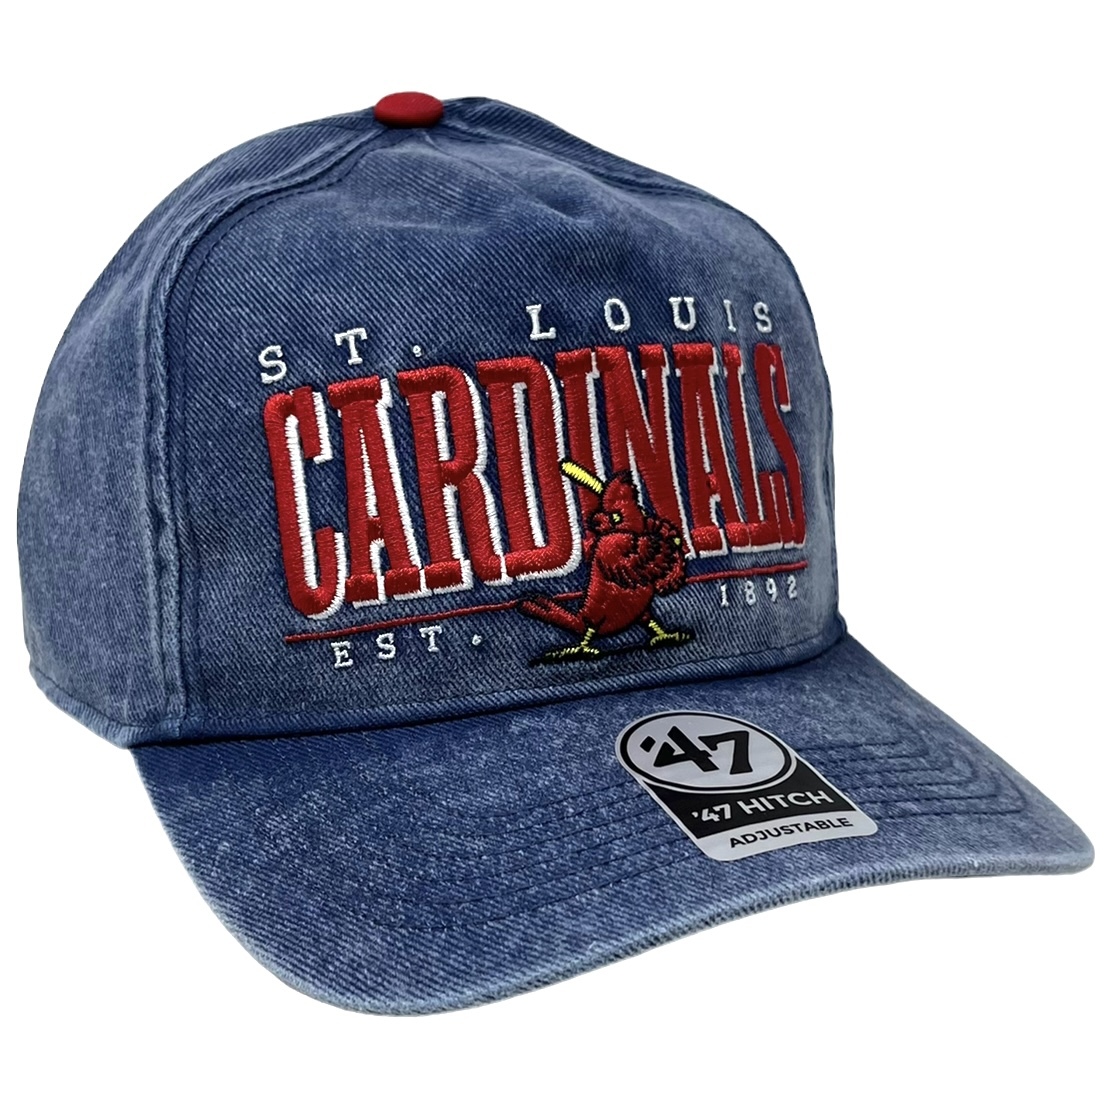 St. Louis Cardinals Men’s 47 Vintage Fontana Hitch Clean Up Adjustable Hat